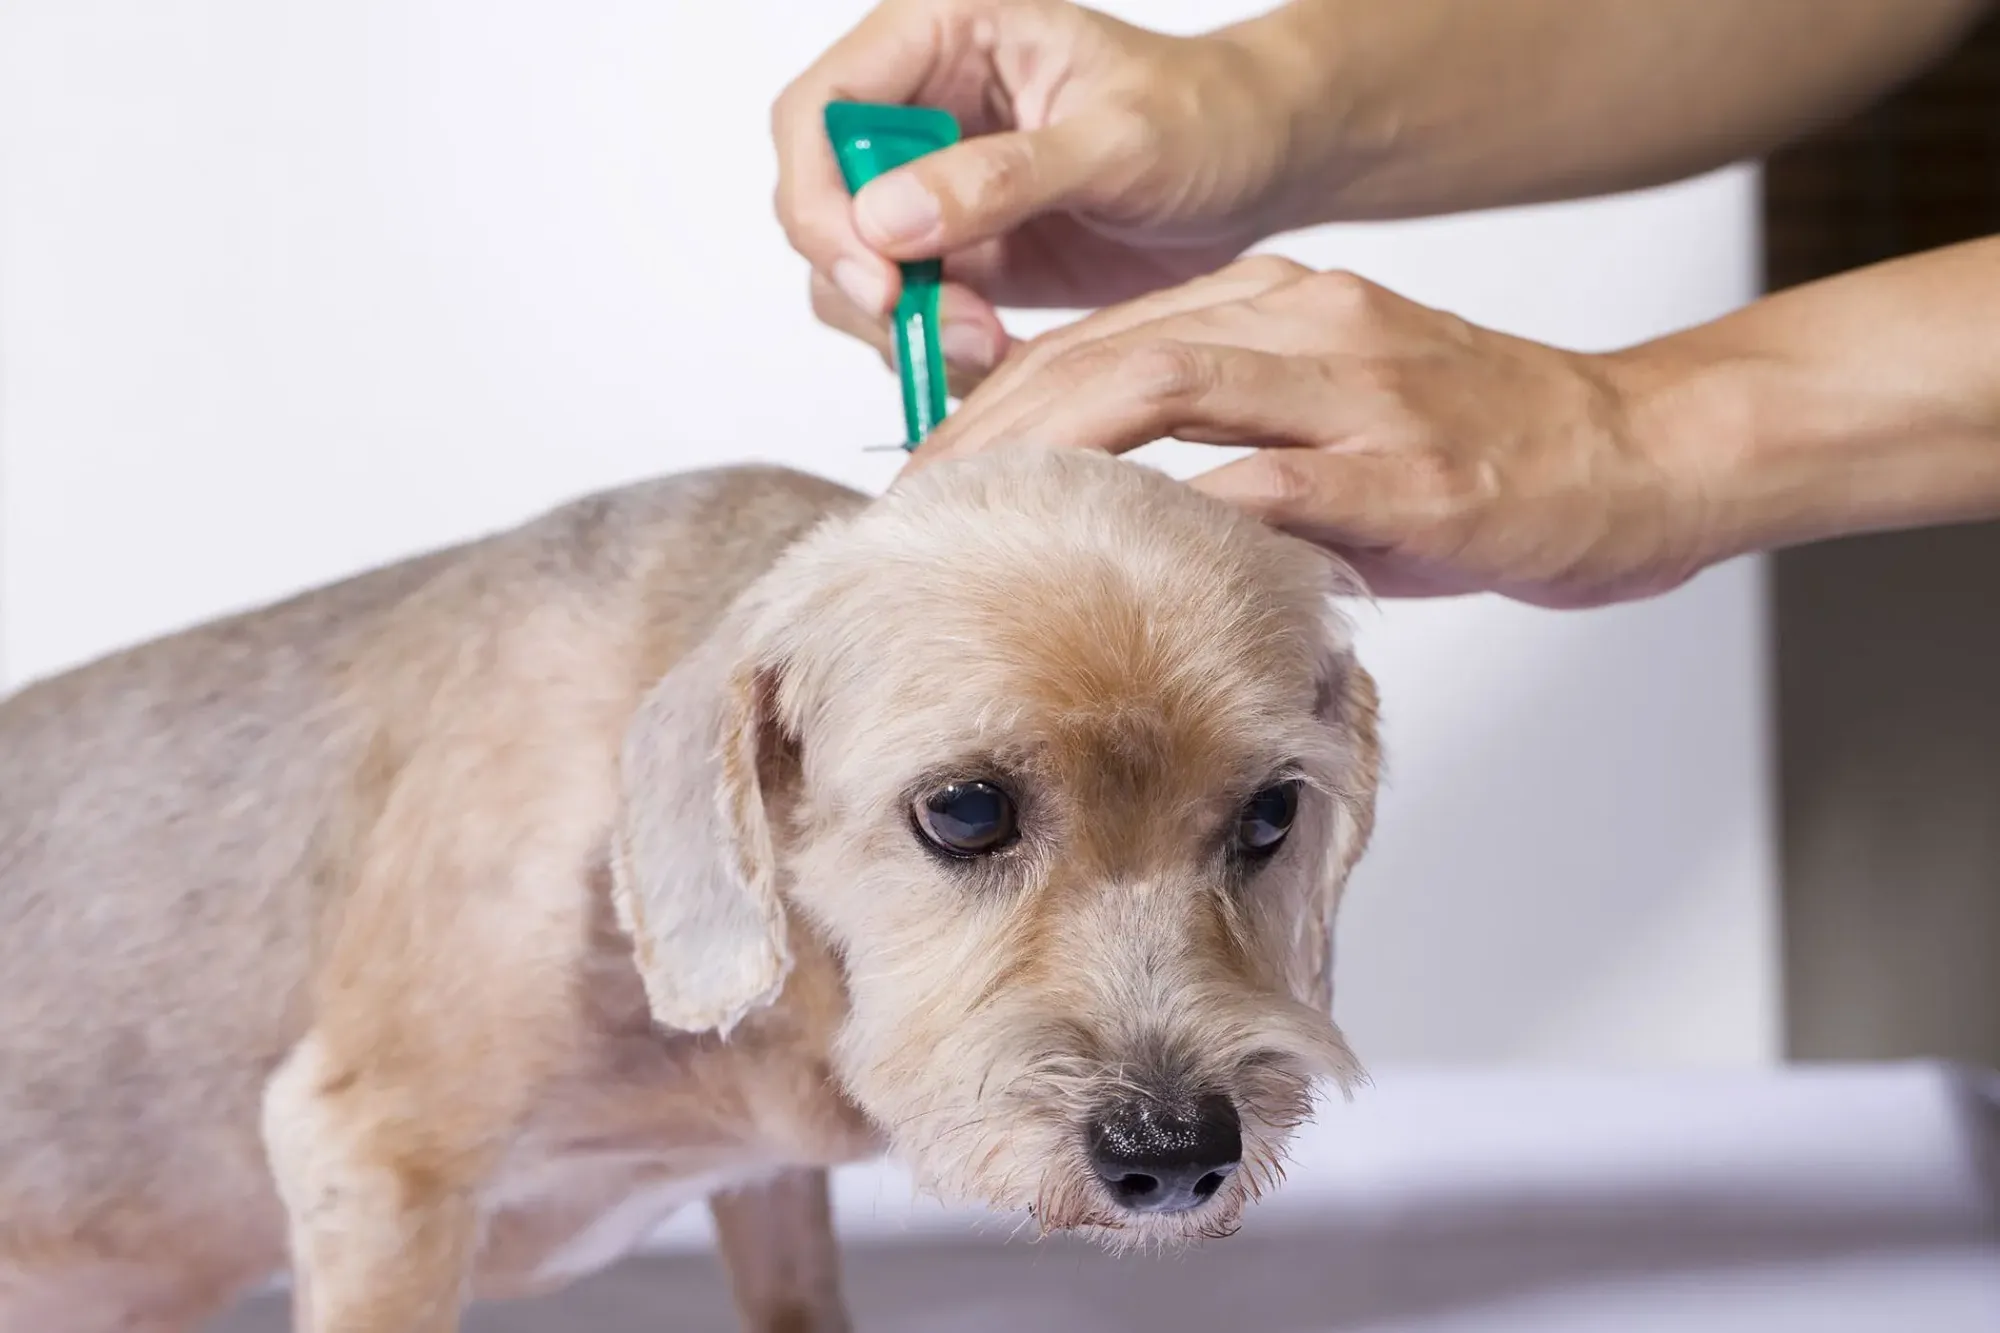 flea infestation in dogs: